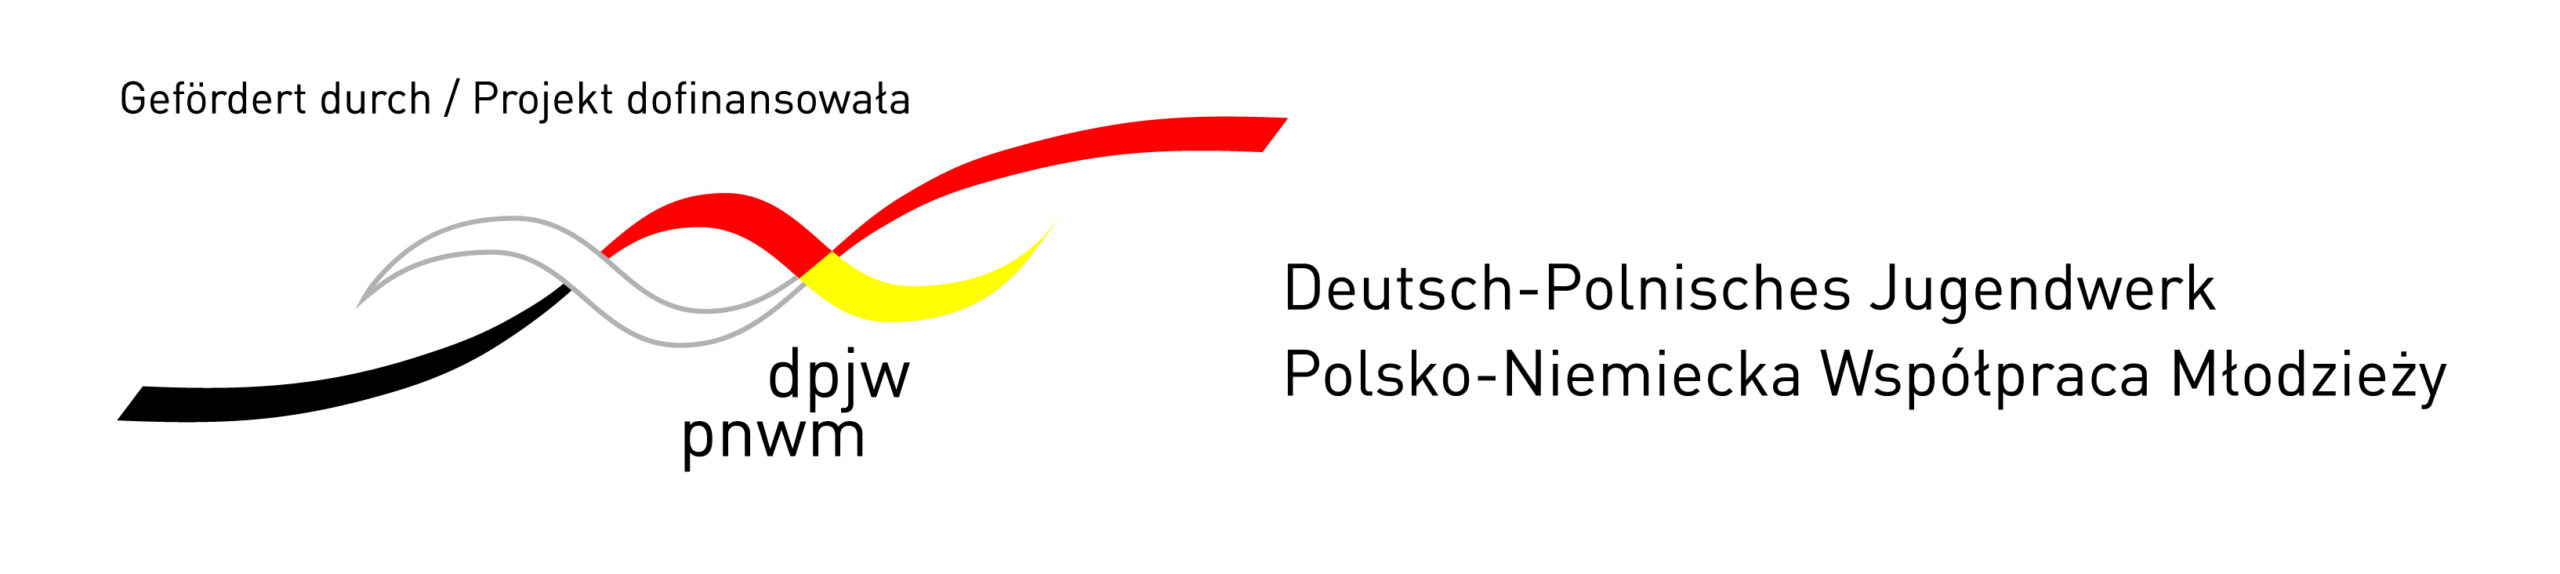 Logo PNWM POZIOM RGB do internetu z dopiskiem